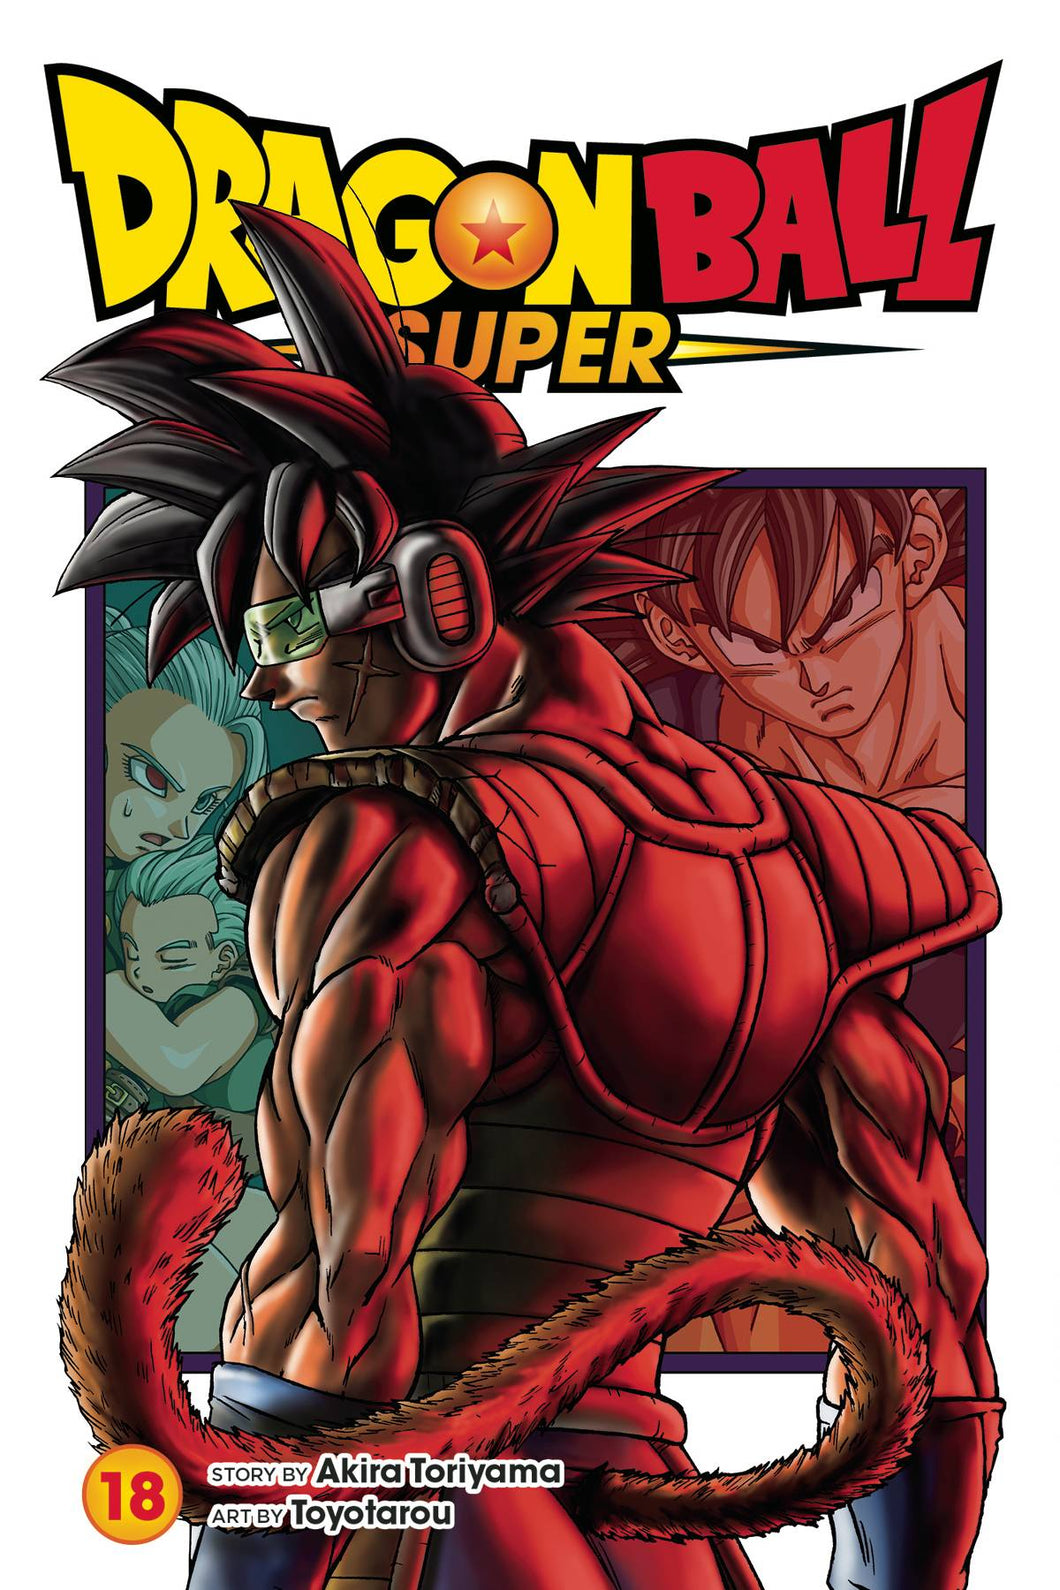 Dragon Ball Super Volume 18 Graphic Novel